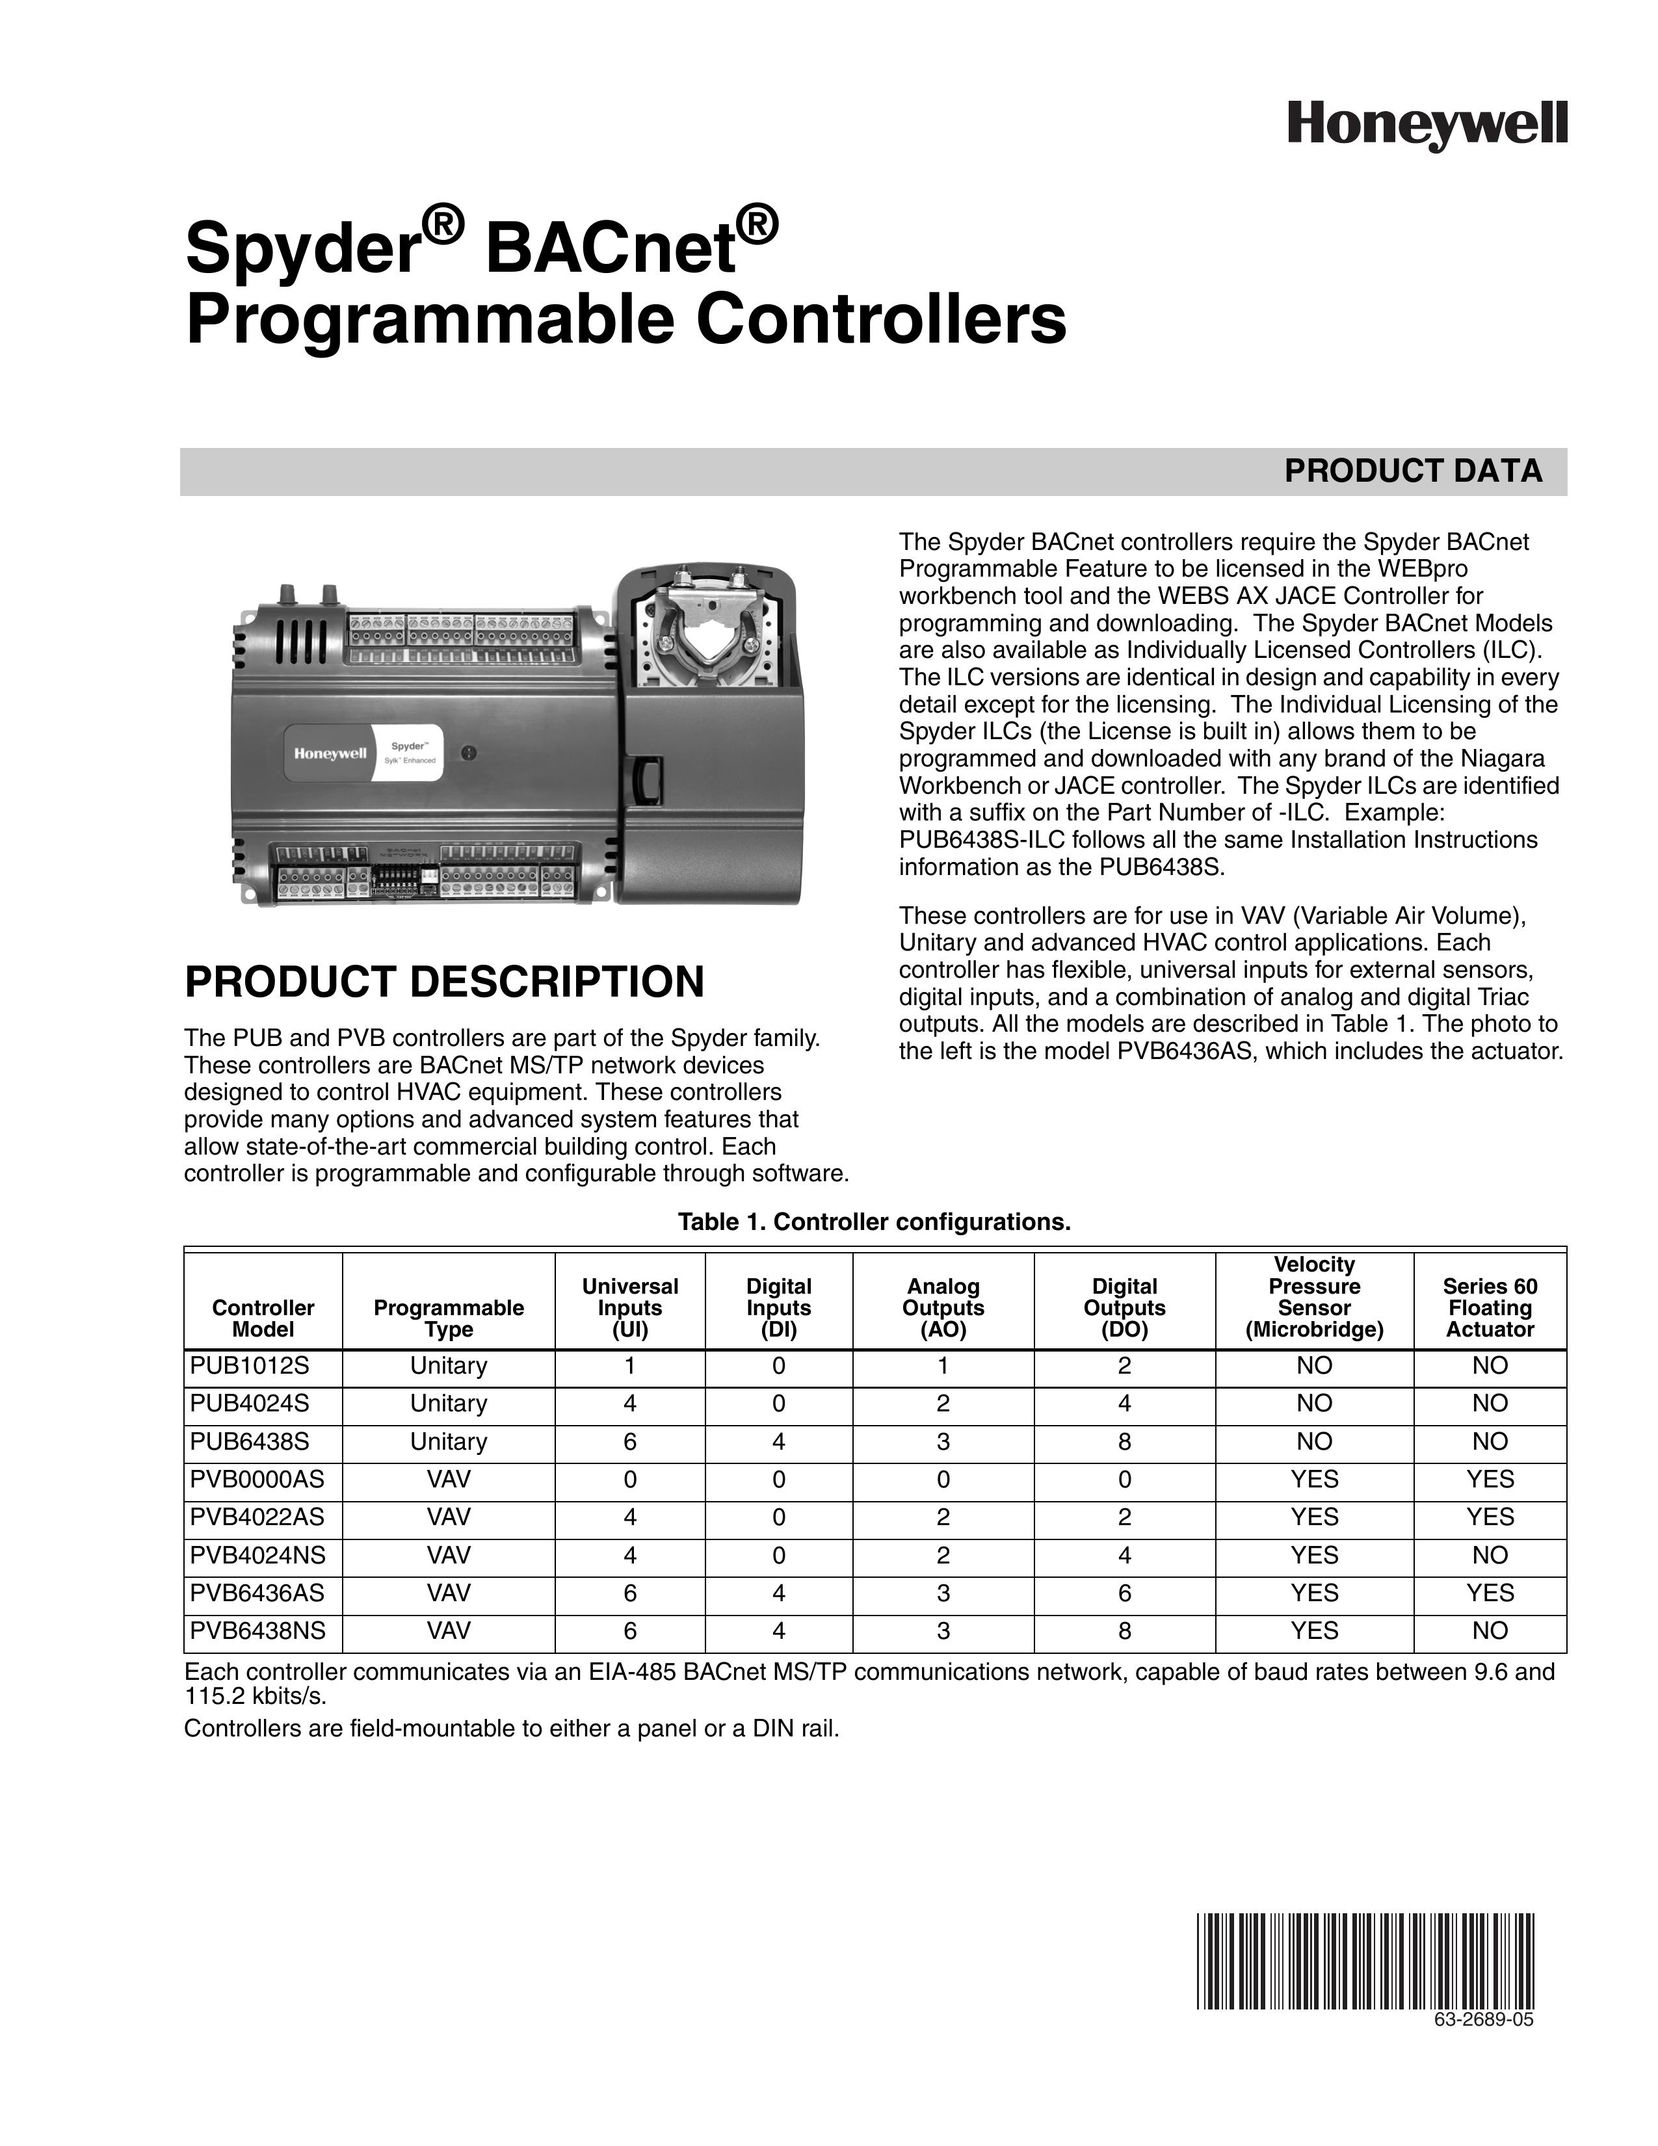 Honeywell PUB1012S Universal Remote User Manual